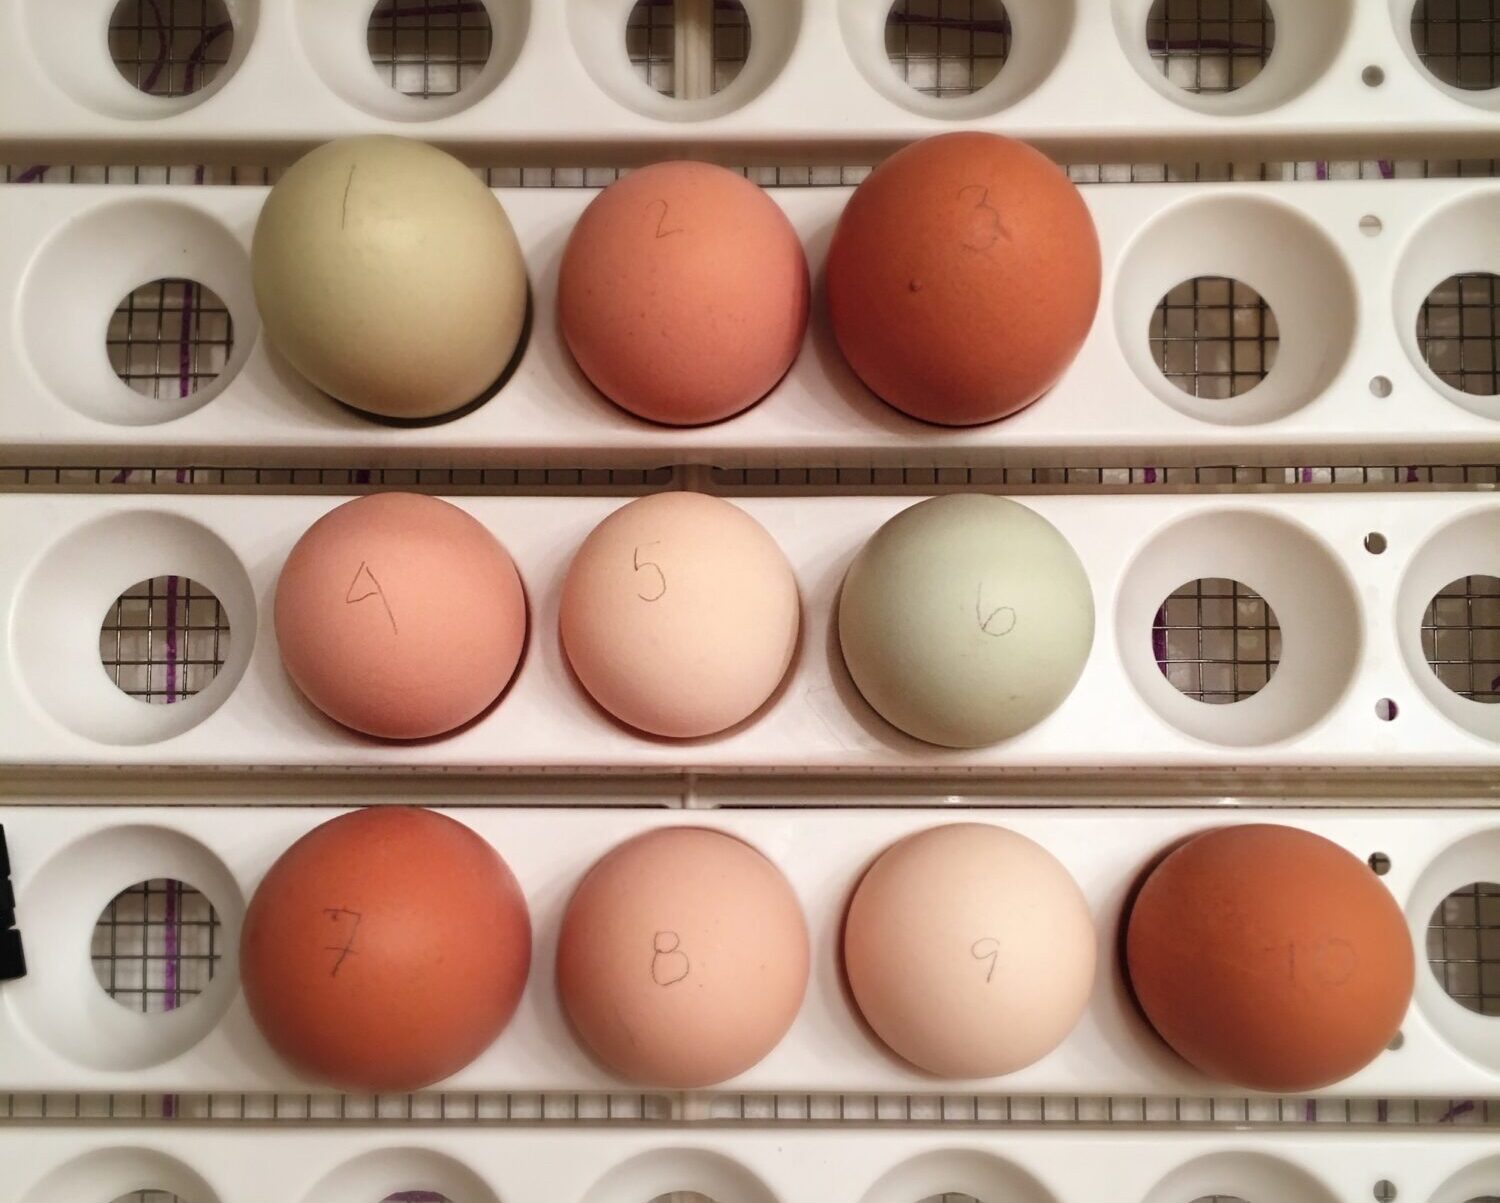 10 eggs in an incubator